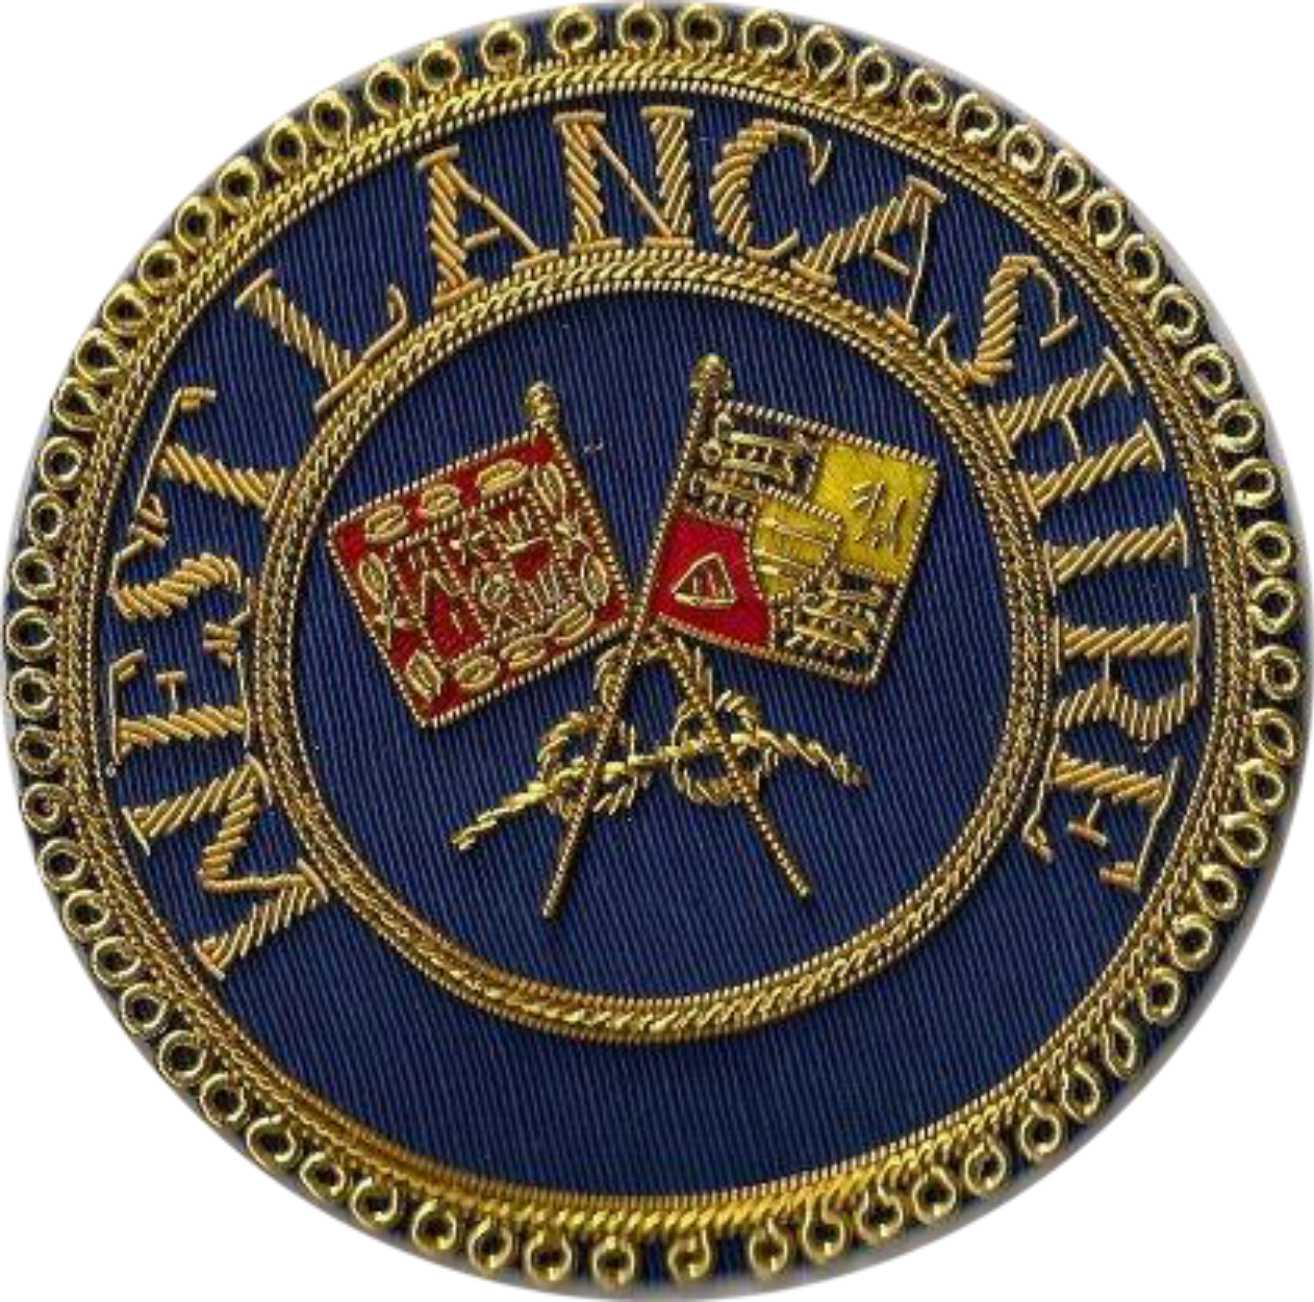  West Lancashire Masonic Badge